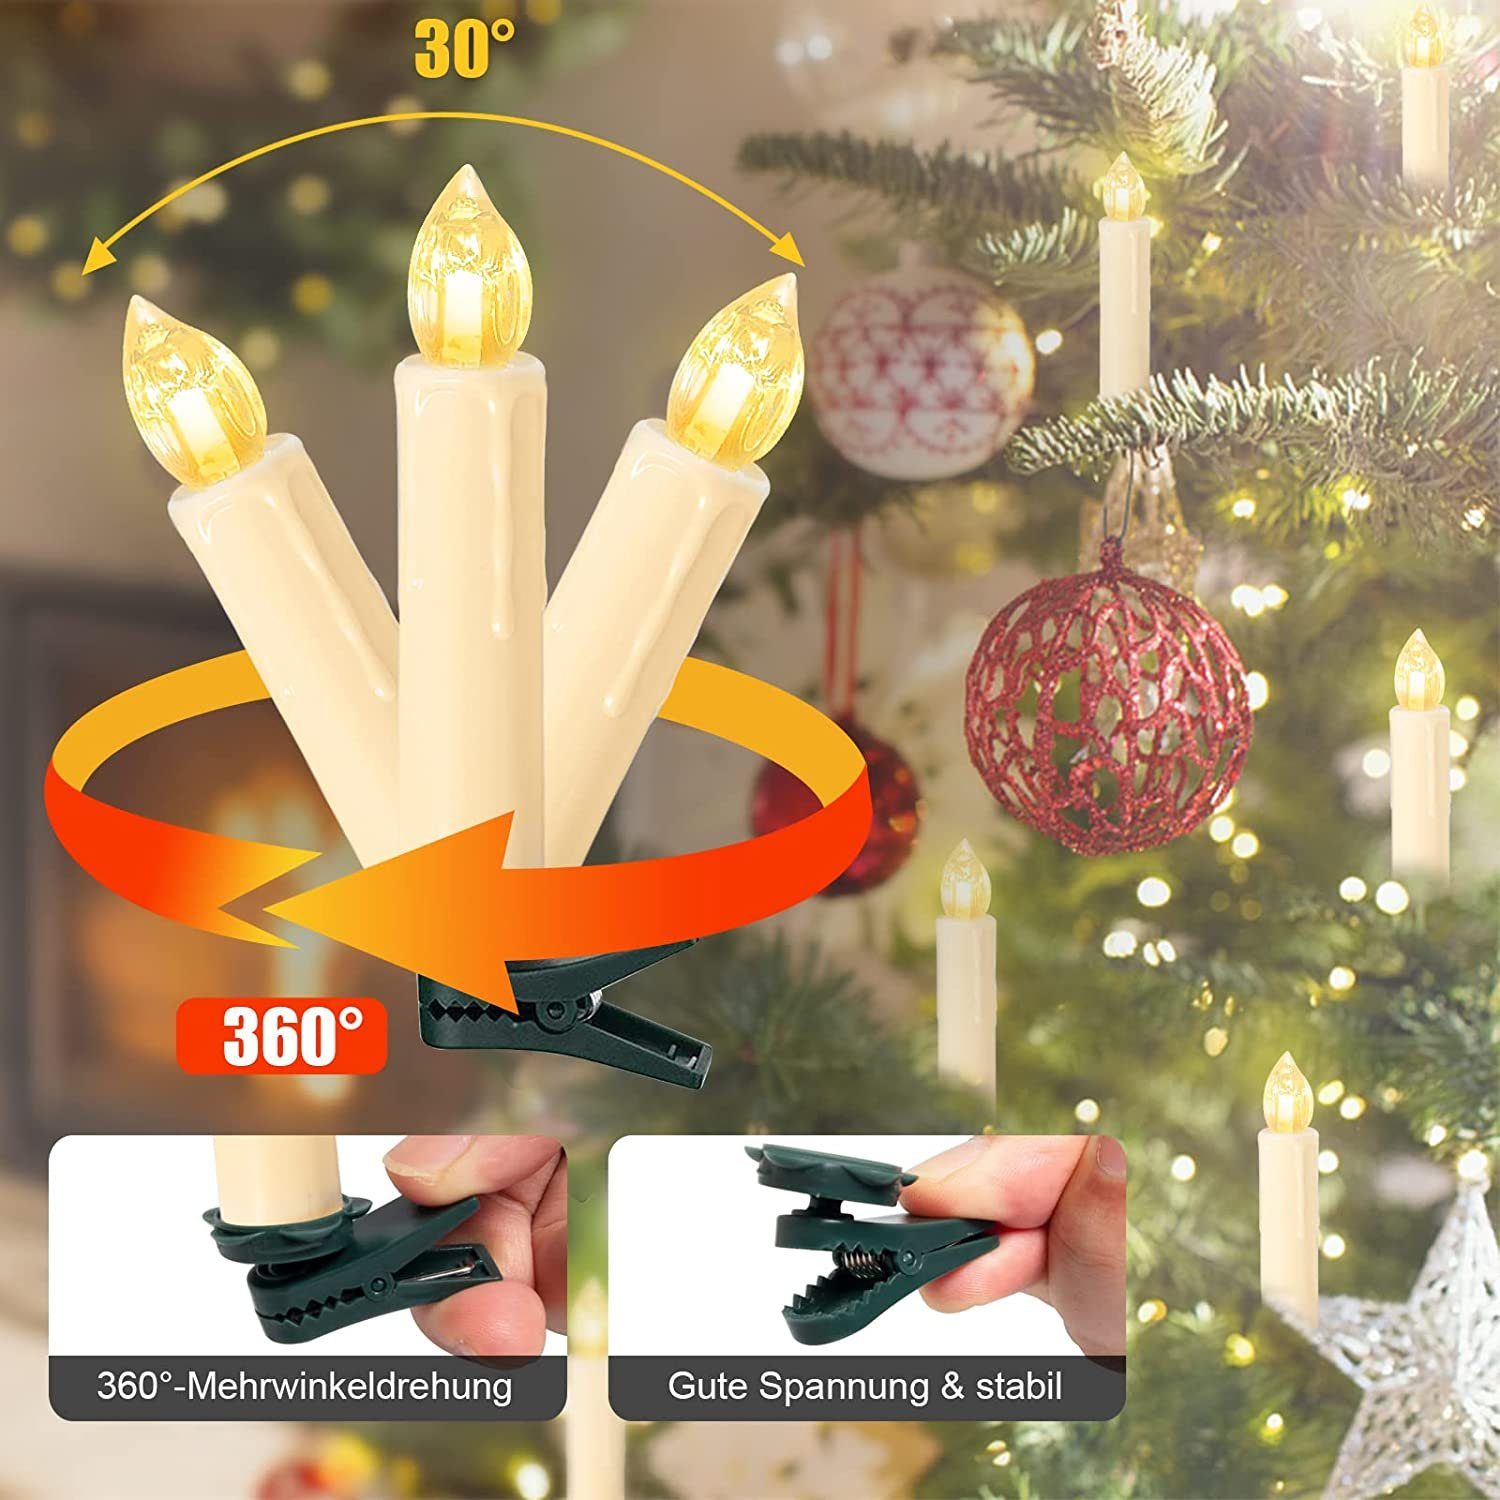 40X Warmweiß LED Weihnachtskerzen Lichterkette Weihnachtsbaum Beleuchtung 